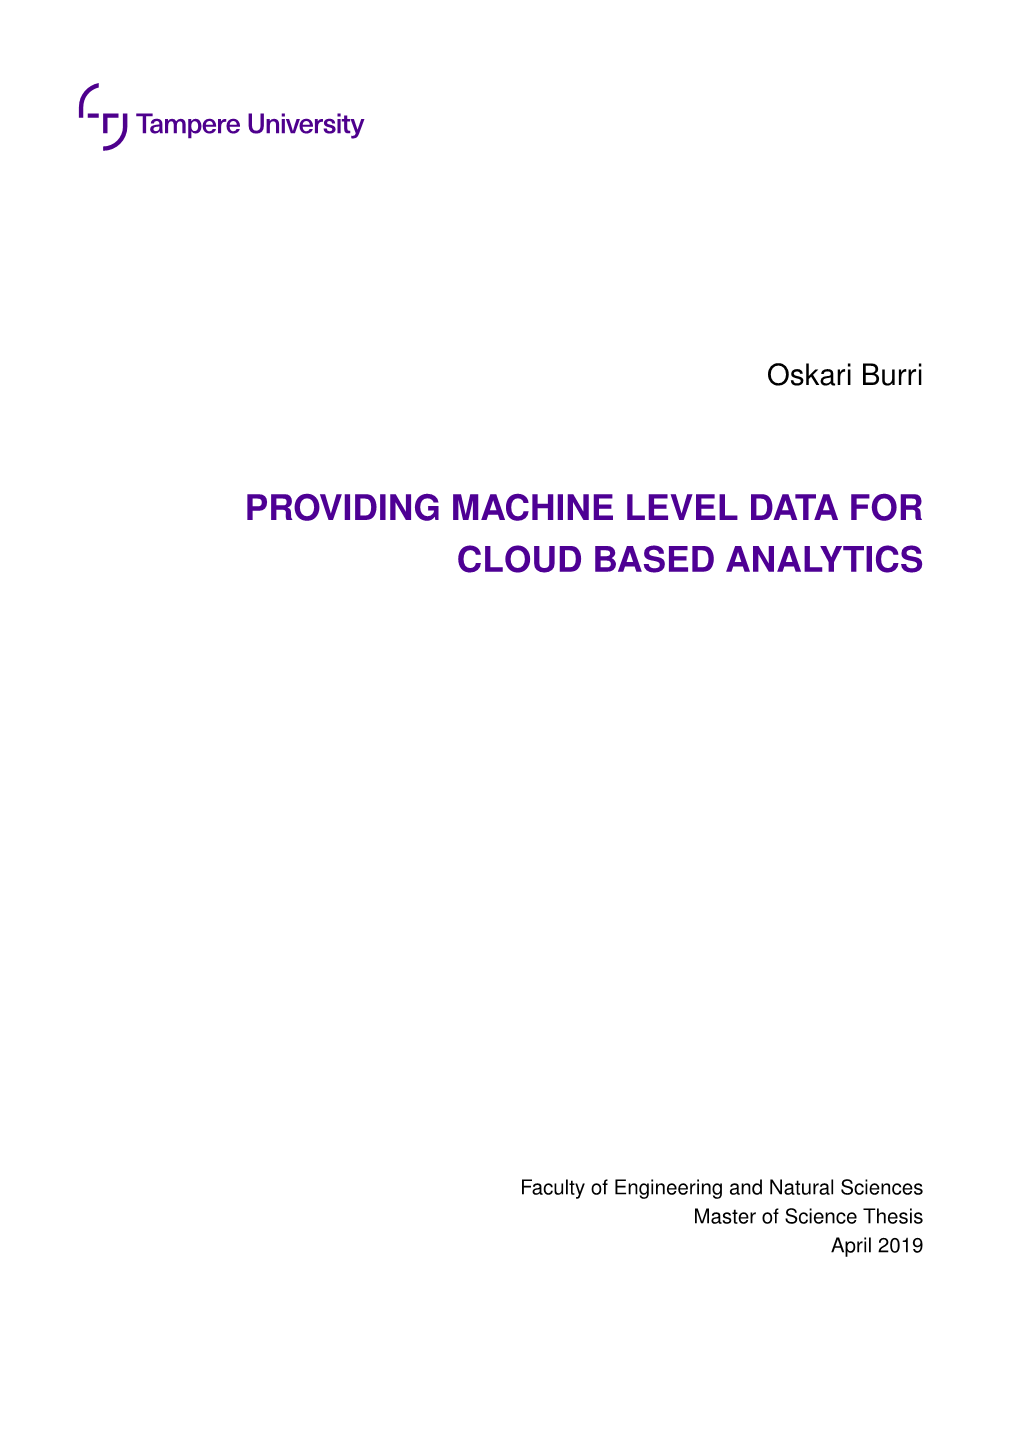 Providing Machine Level Data for Cloud Based Analytics